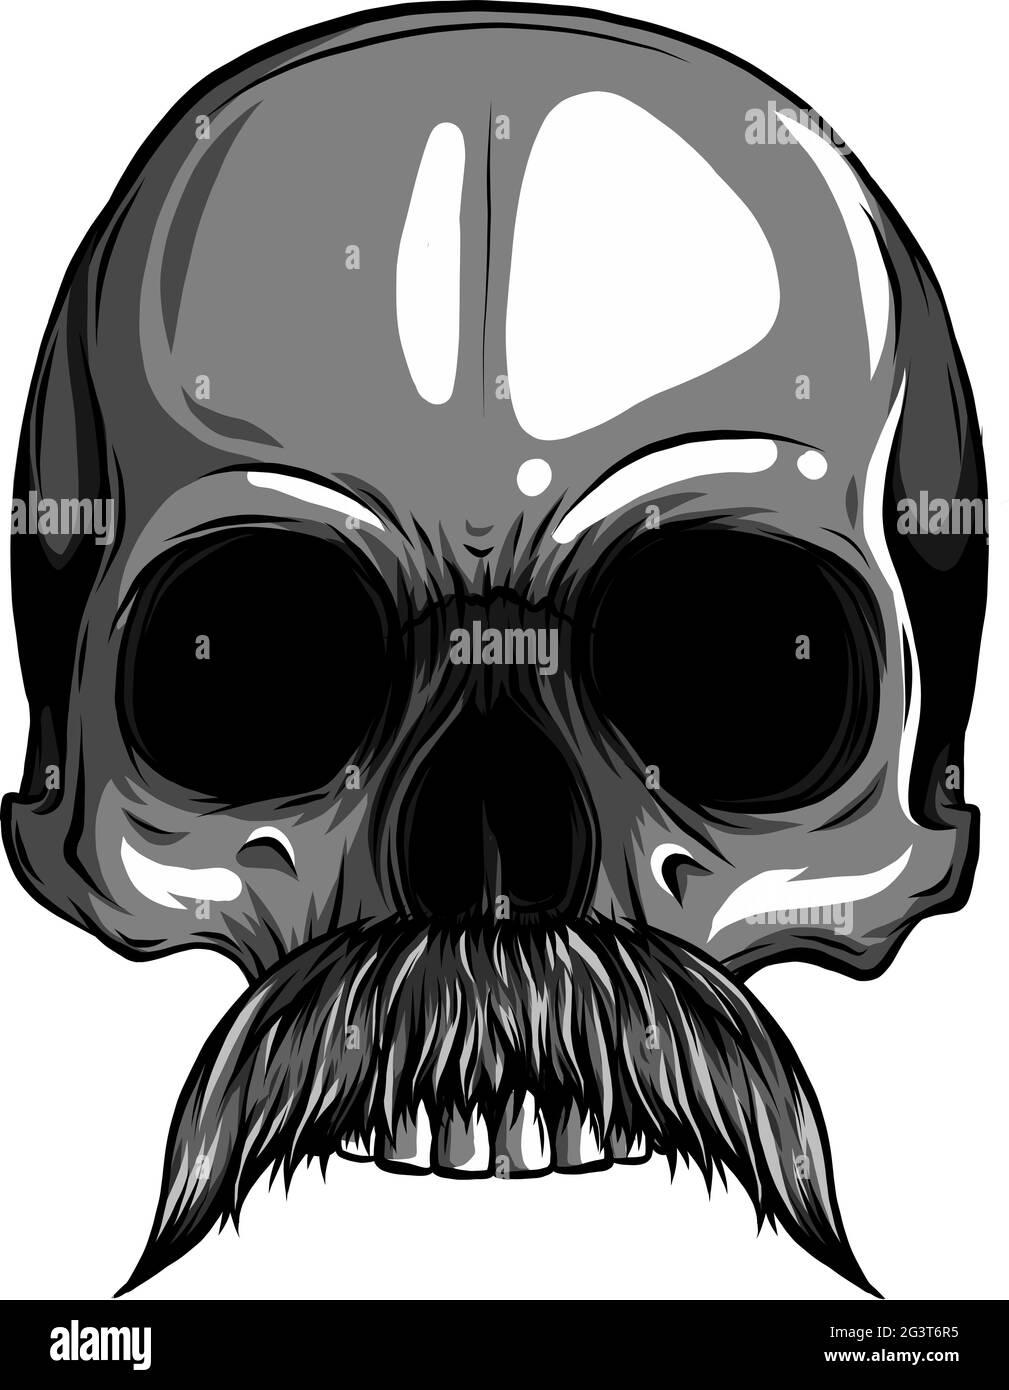 Illustrazione vettoriale del cranio umano con baffi Illustrazione Vettoriale